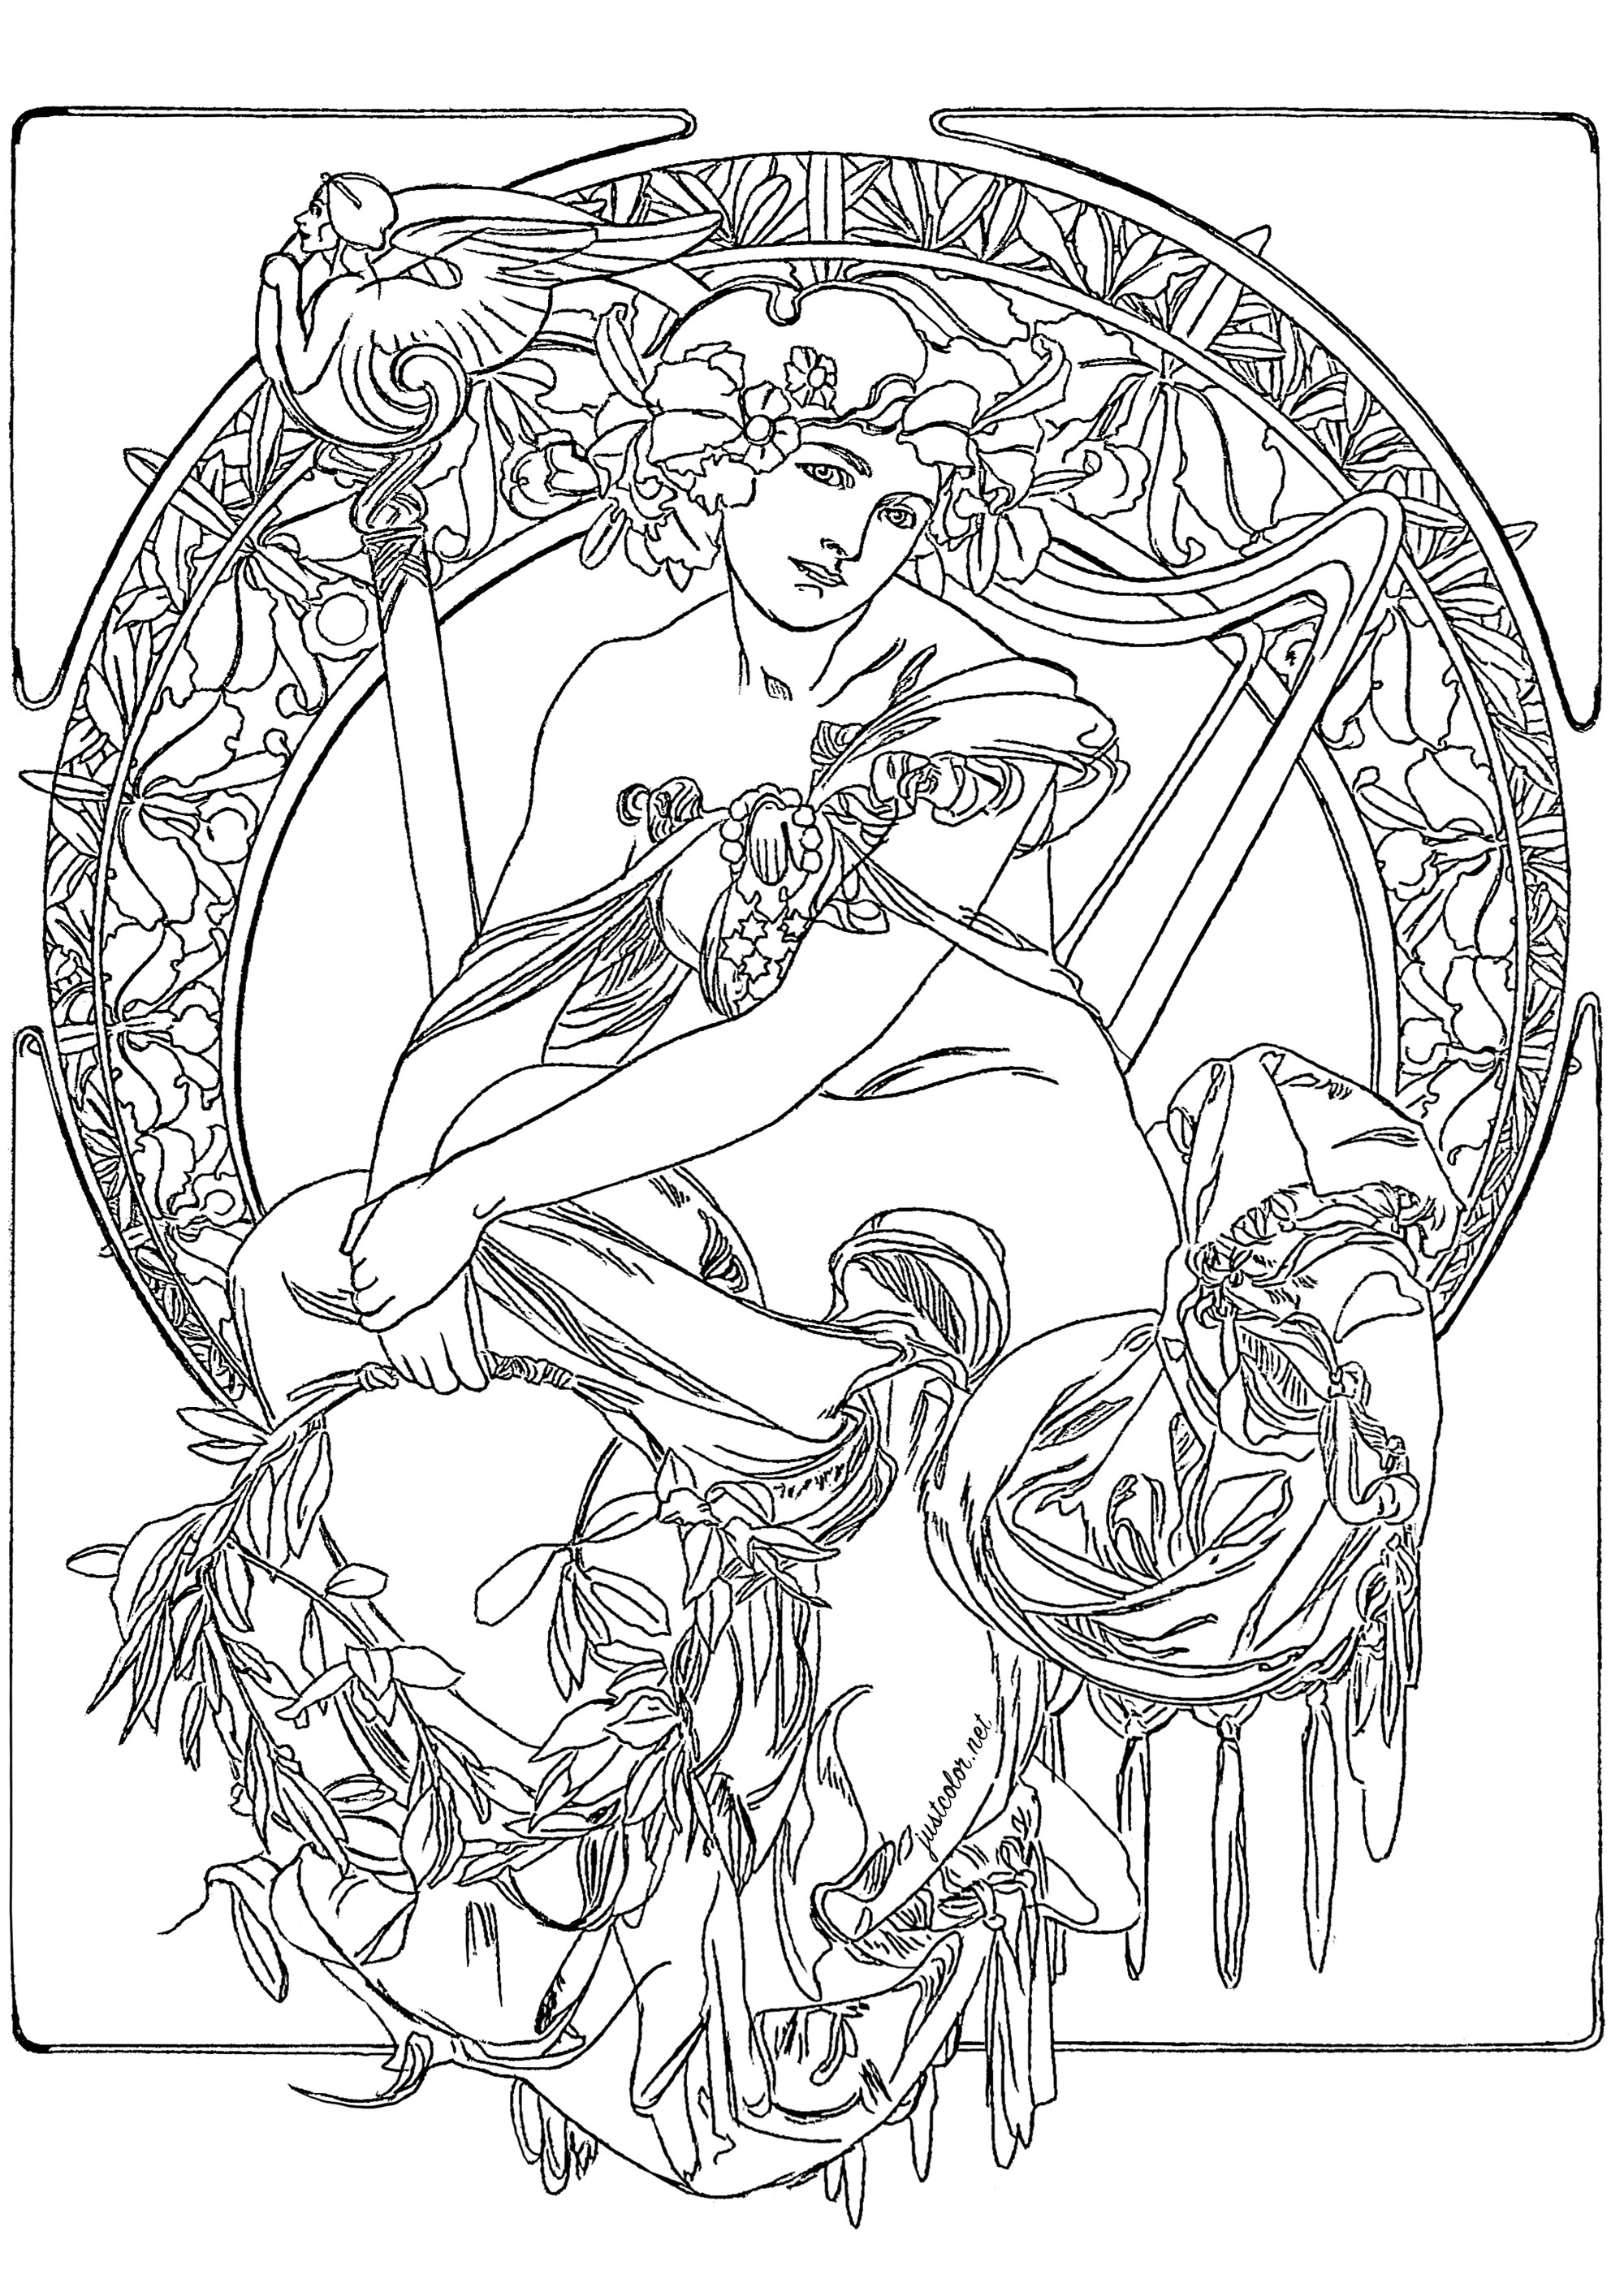 Alfons Mucha - Étude pour une affiche publicitaire (1900). La composition est basée sur un cercle central, entouré par une série de motifs floraux et géométriques. Dans le cercle central, on peut voir un personnage féminin, dont les vêtements sont ornés de motifs floraux et d'une couronne de feuilles et de fleurs. Même s'il s'agit d'un croquis, les détails sont très précis et reflètent la finesse et le souci du détail de Mucha. (Le dessin original a été légèrement retravaillé pour permettre de le colorier), Artiste : Olivier